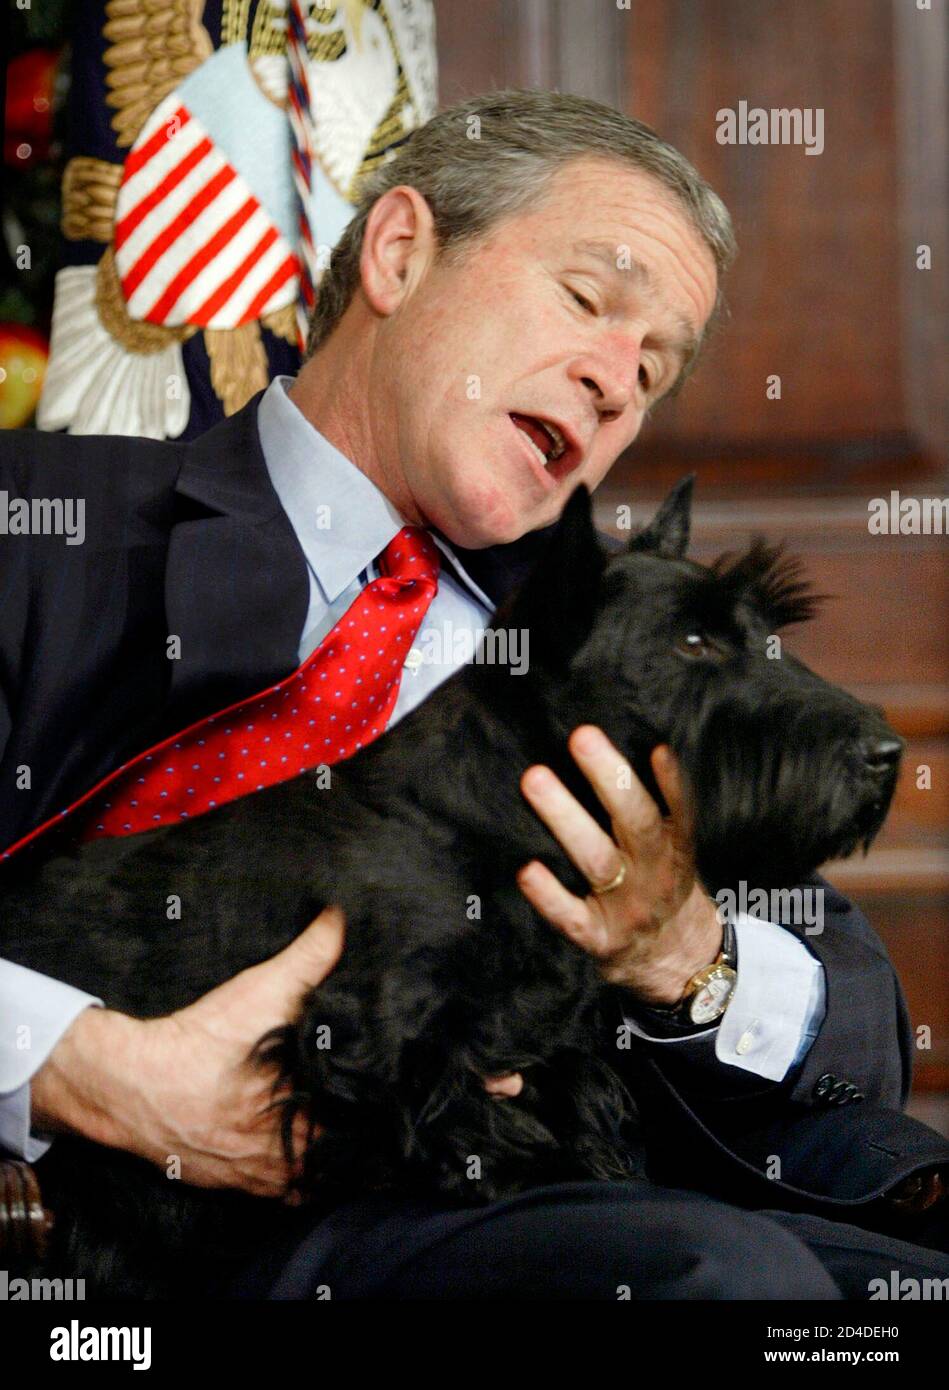 US-Präsident George W. Bush hält an seinem Hund Barney fest, nachdem das Haustier des Weißen Hauses unerwartet hereinkam und einige Schüler Raum Washington während einer Lesung einer Weihnachtsgeschichte im Roosevelt-Zimmer des